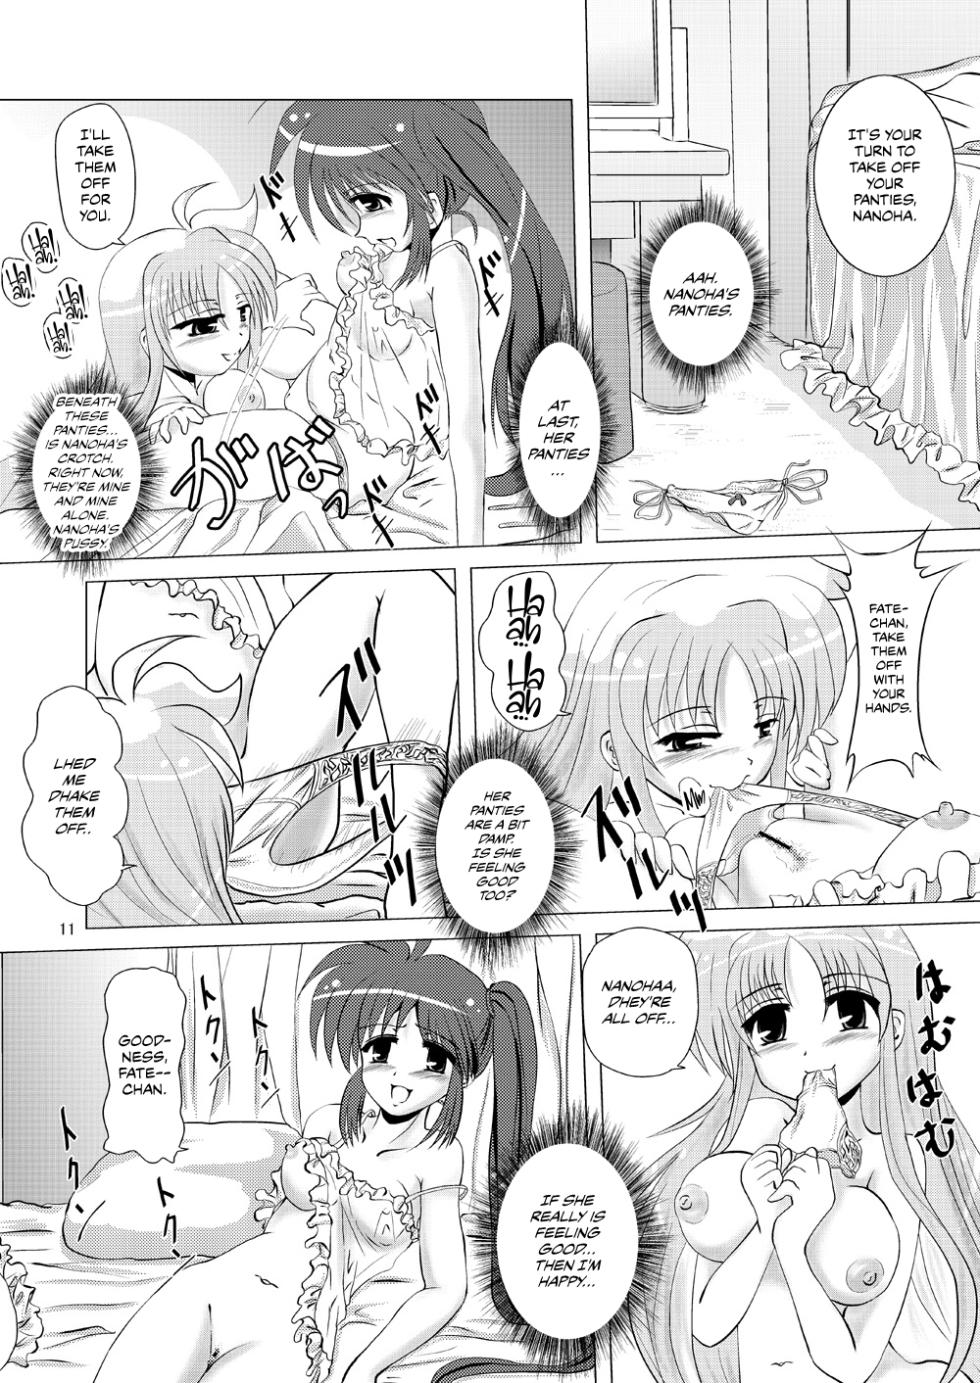 (SC35) [MajesticRune (Kurogane)] Kirameku Tsubasa ni Omoi wo Hasete Todoku to Iina, Watashi no Yuuki (Magical Girl Lyrical Nanoha) - Page 10